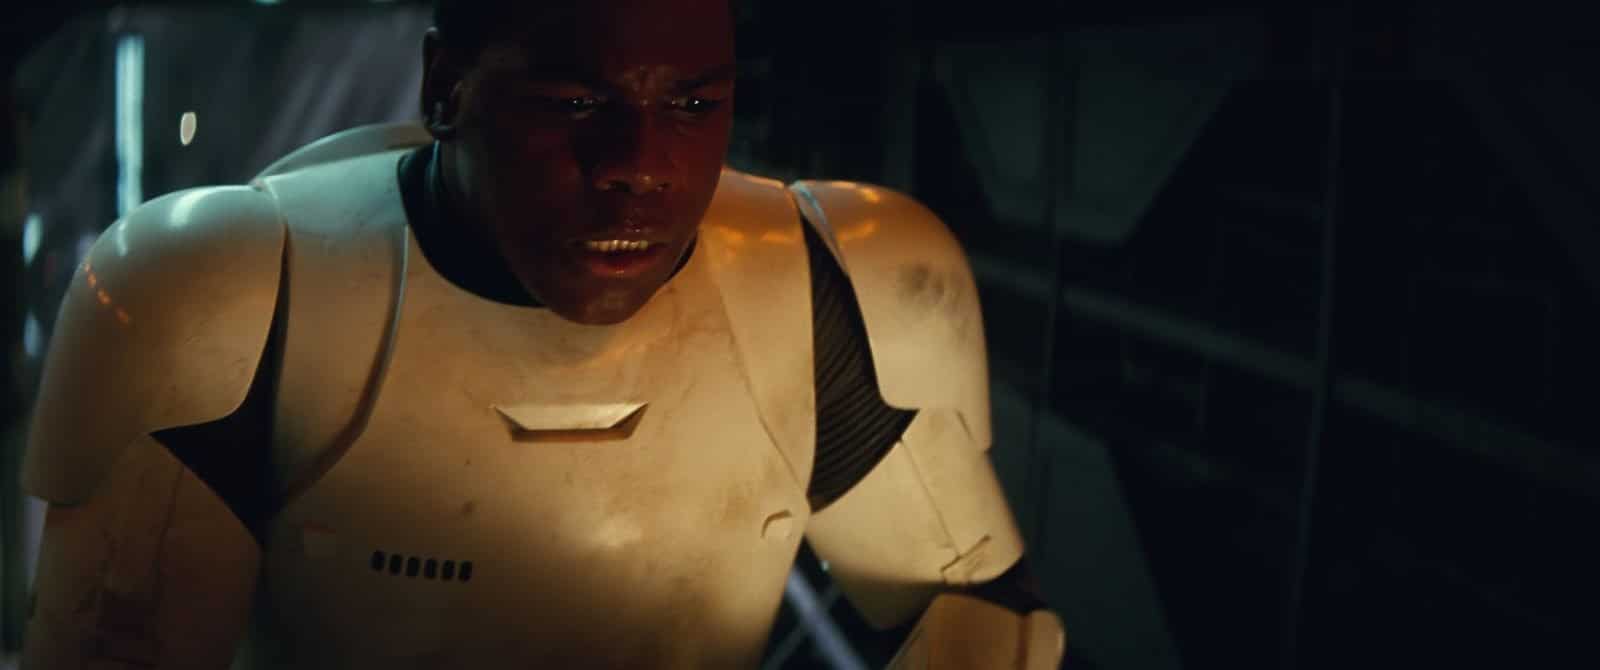 Star Wars VII The Force Awakens 25 - Finn in stormtrooper armor